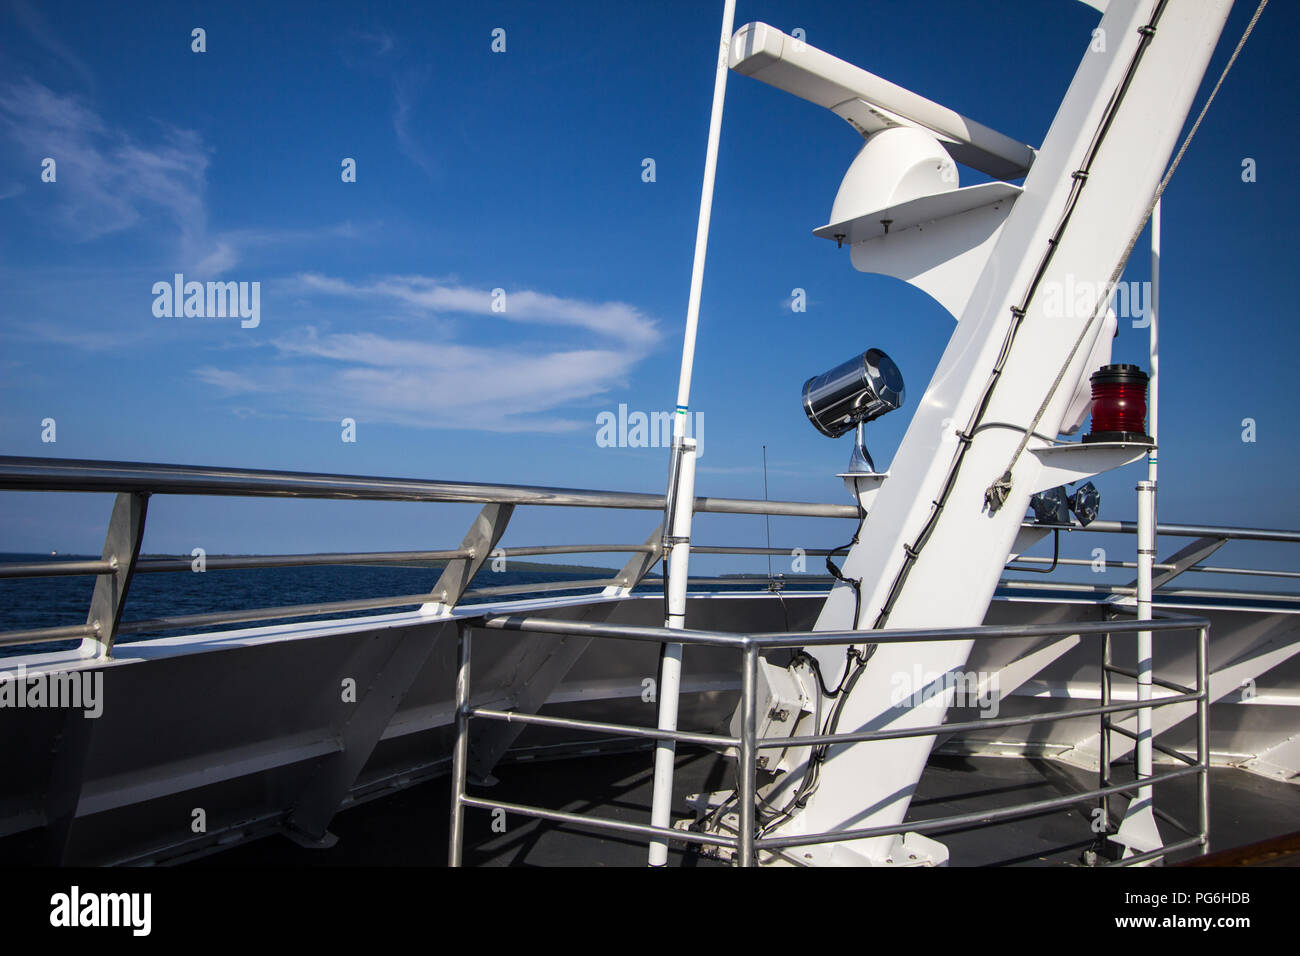 Voile de fond. Pont d'un grand bateau sur une journée ensoleillée avec ciel bleu et bleu horizon de mer Banque D'Images